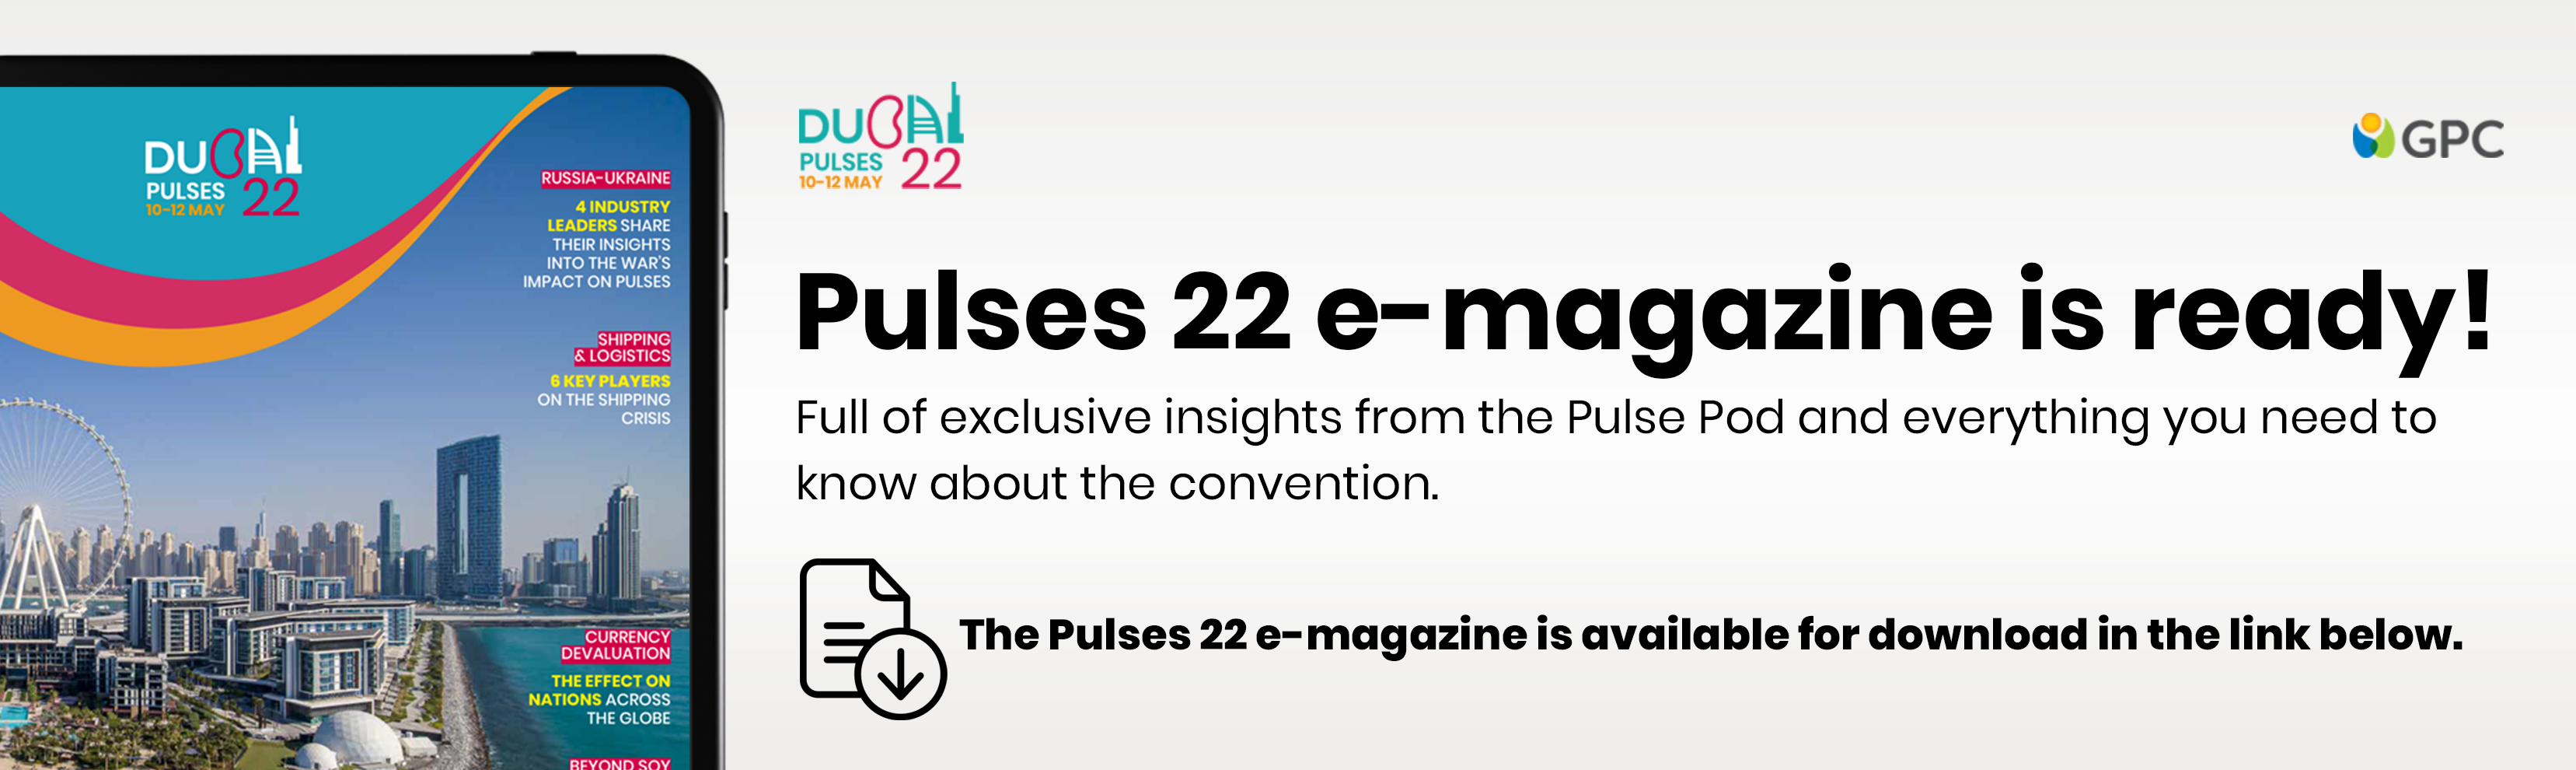 Pulses 22 e-magazine is ready!